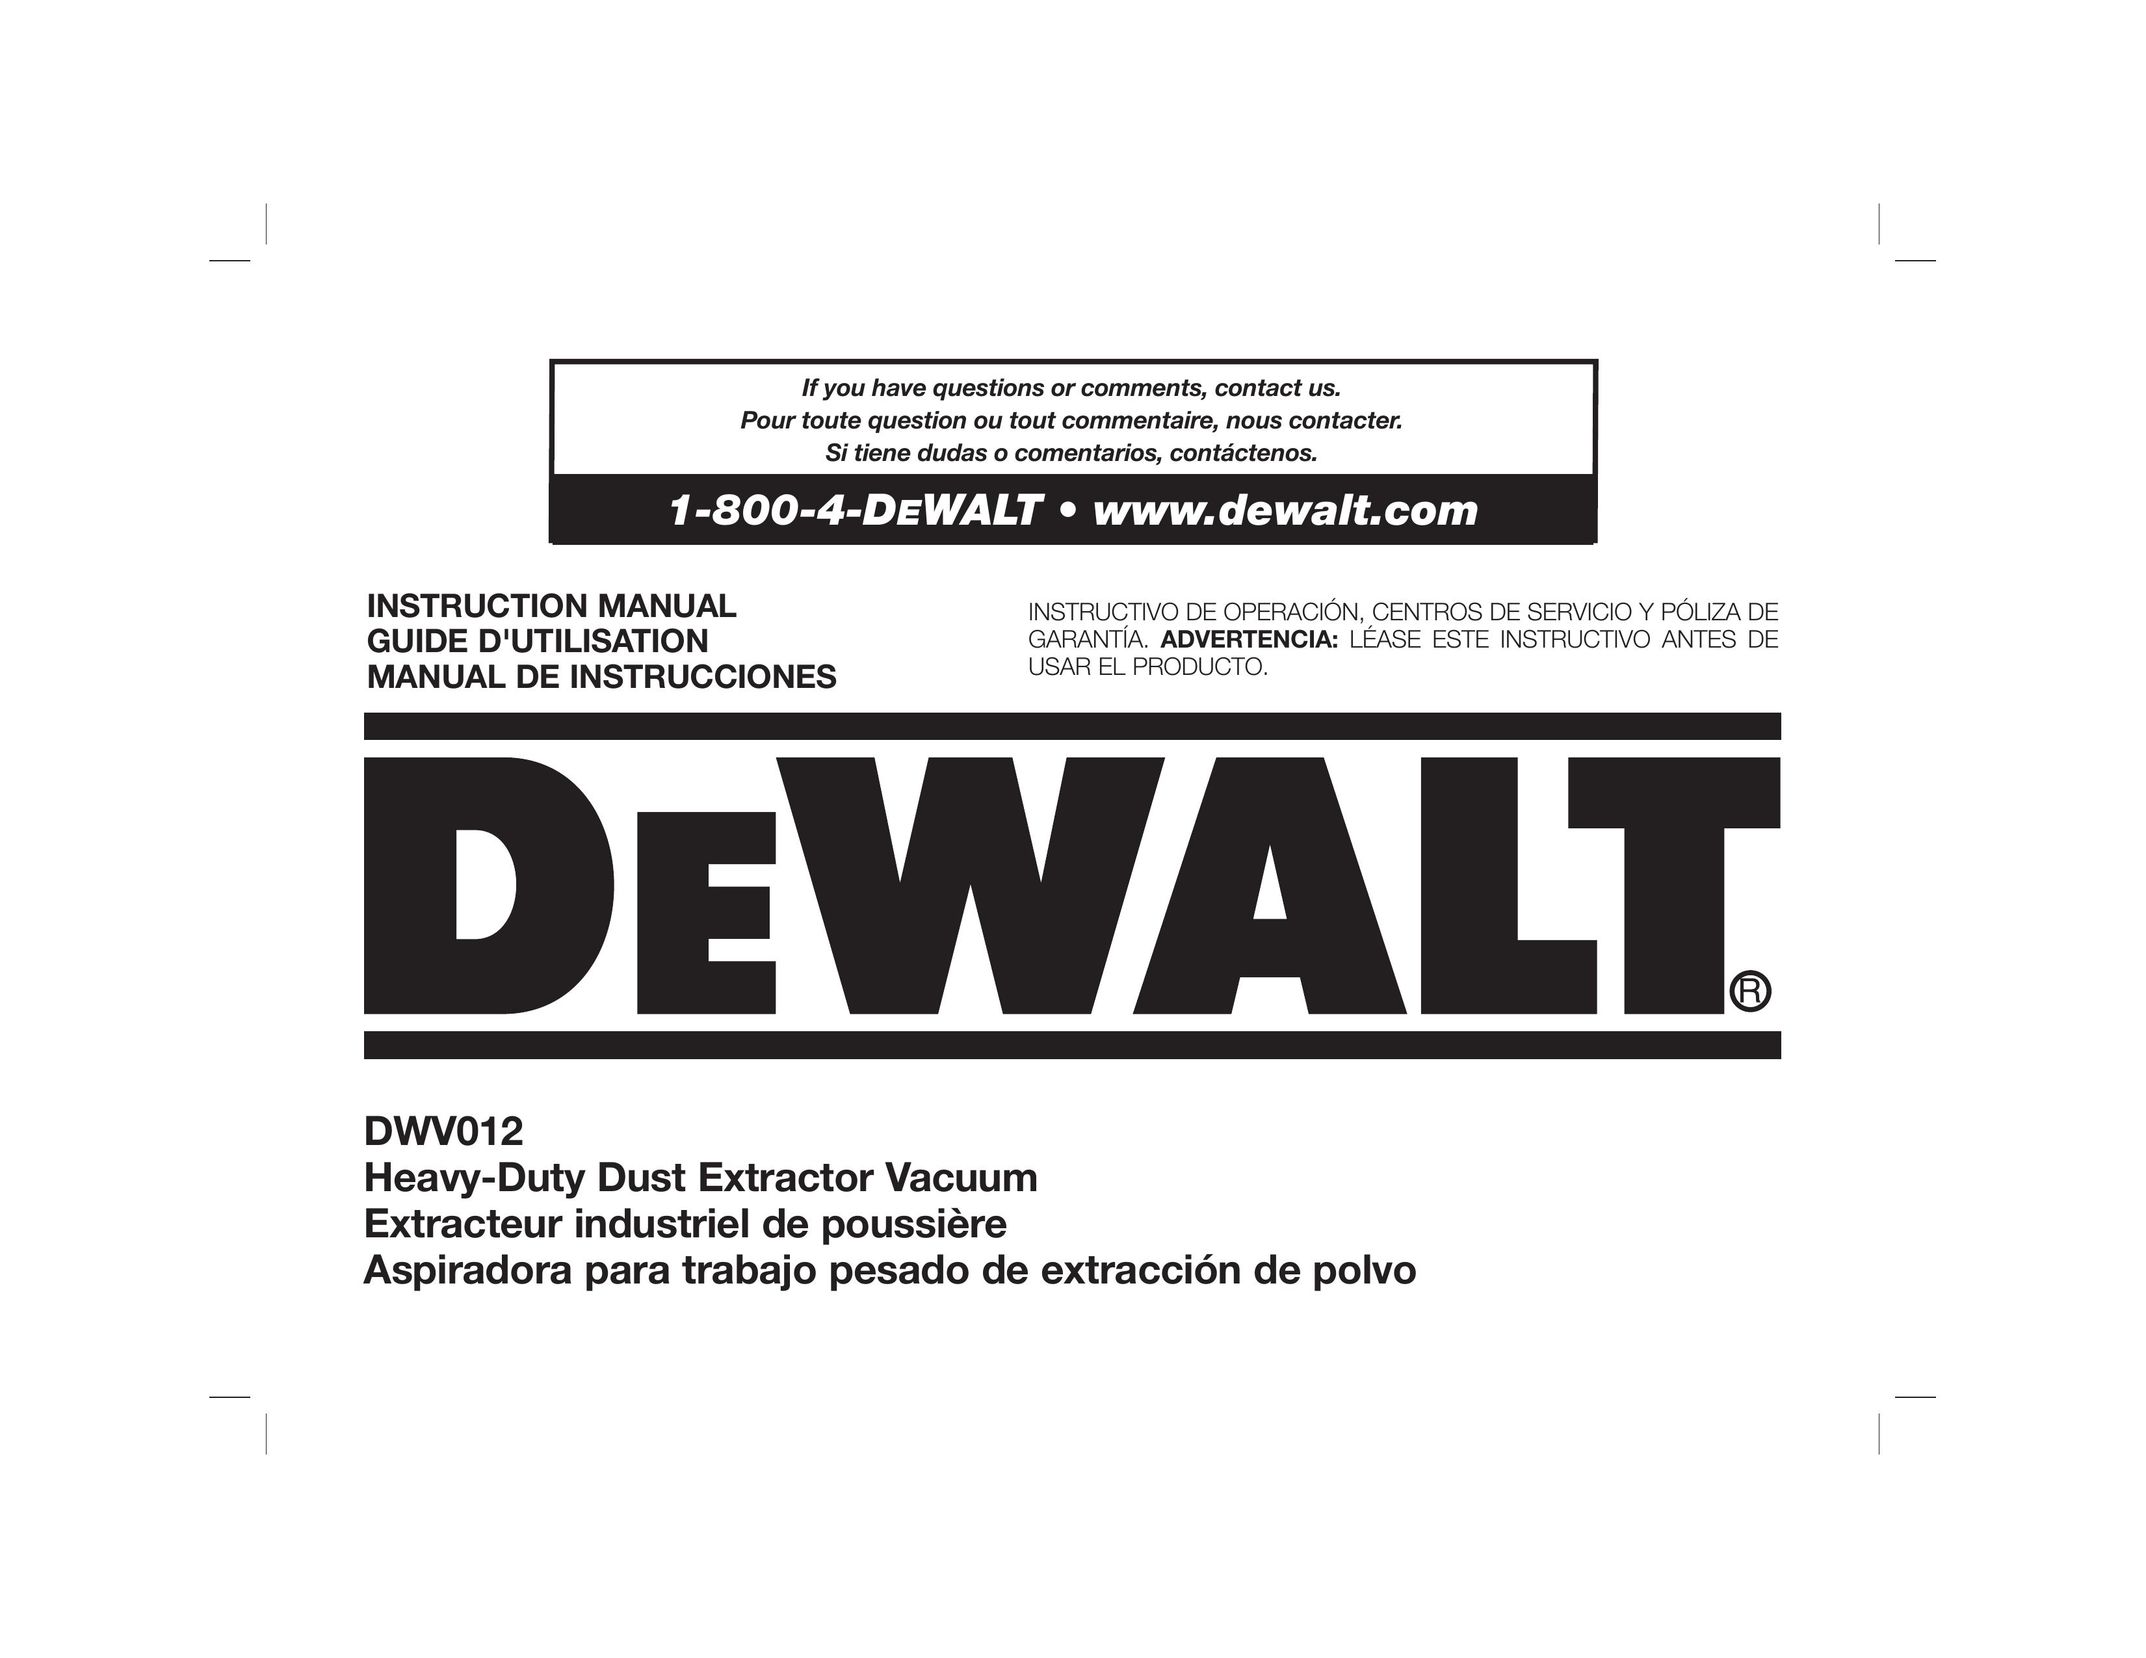 DeWalt Dwy102 Dust Collector User Manual